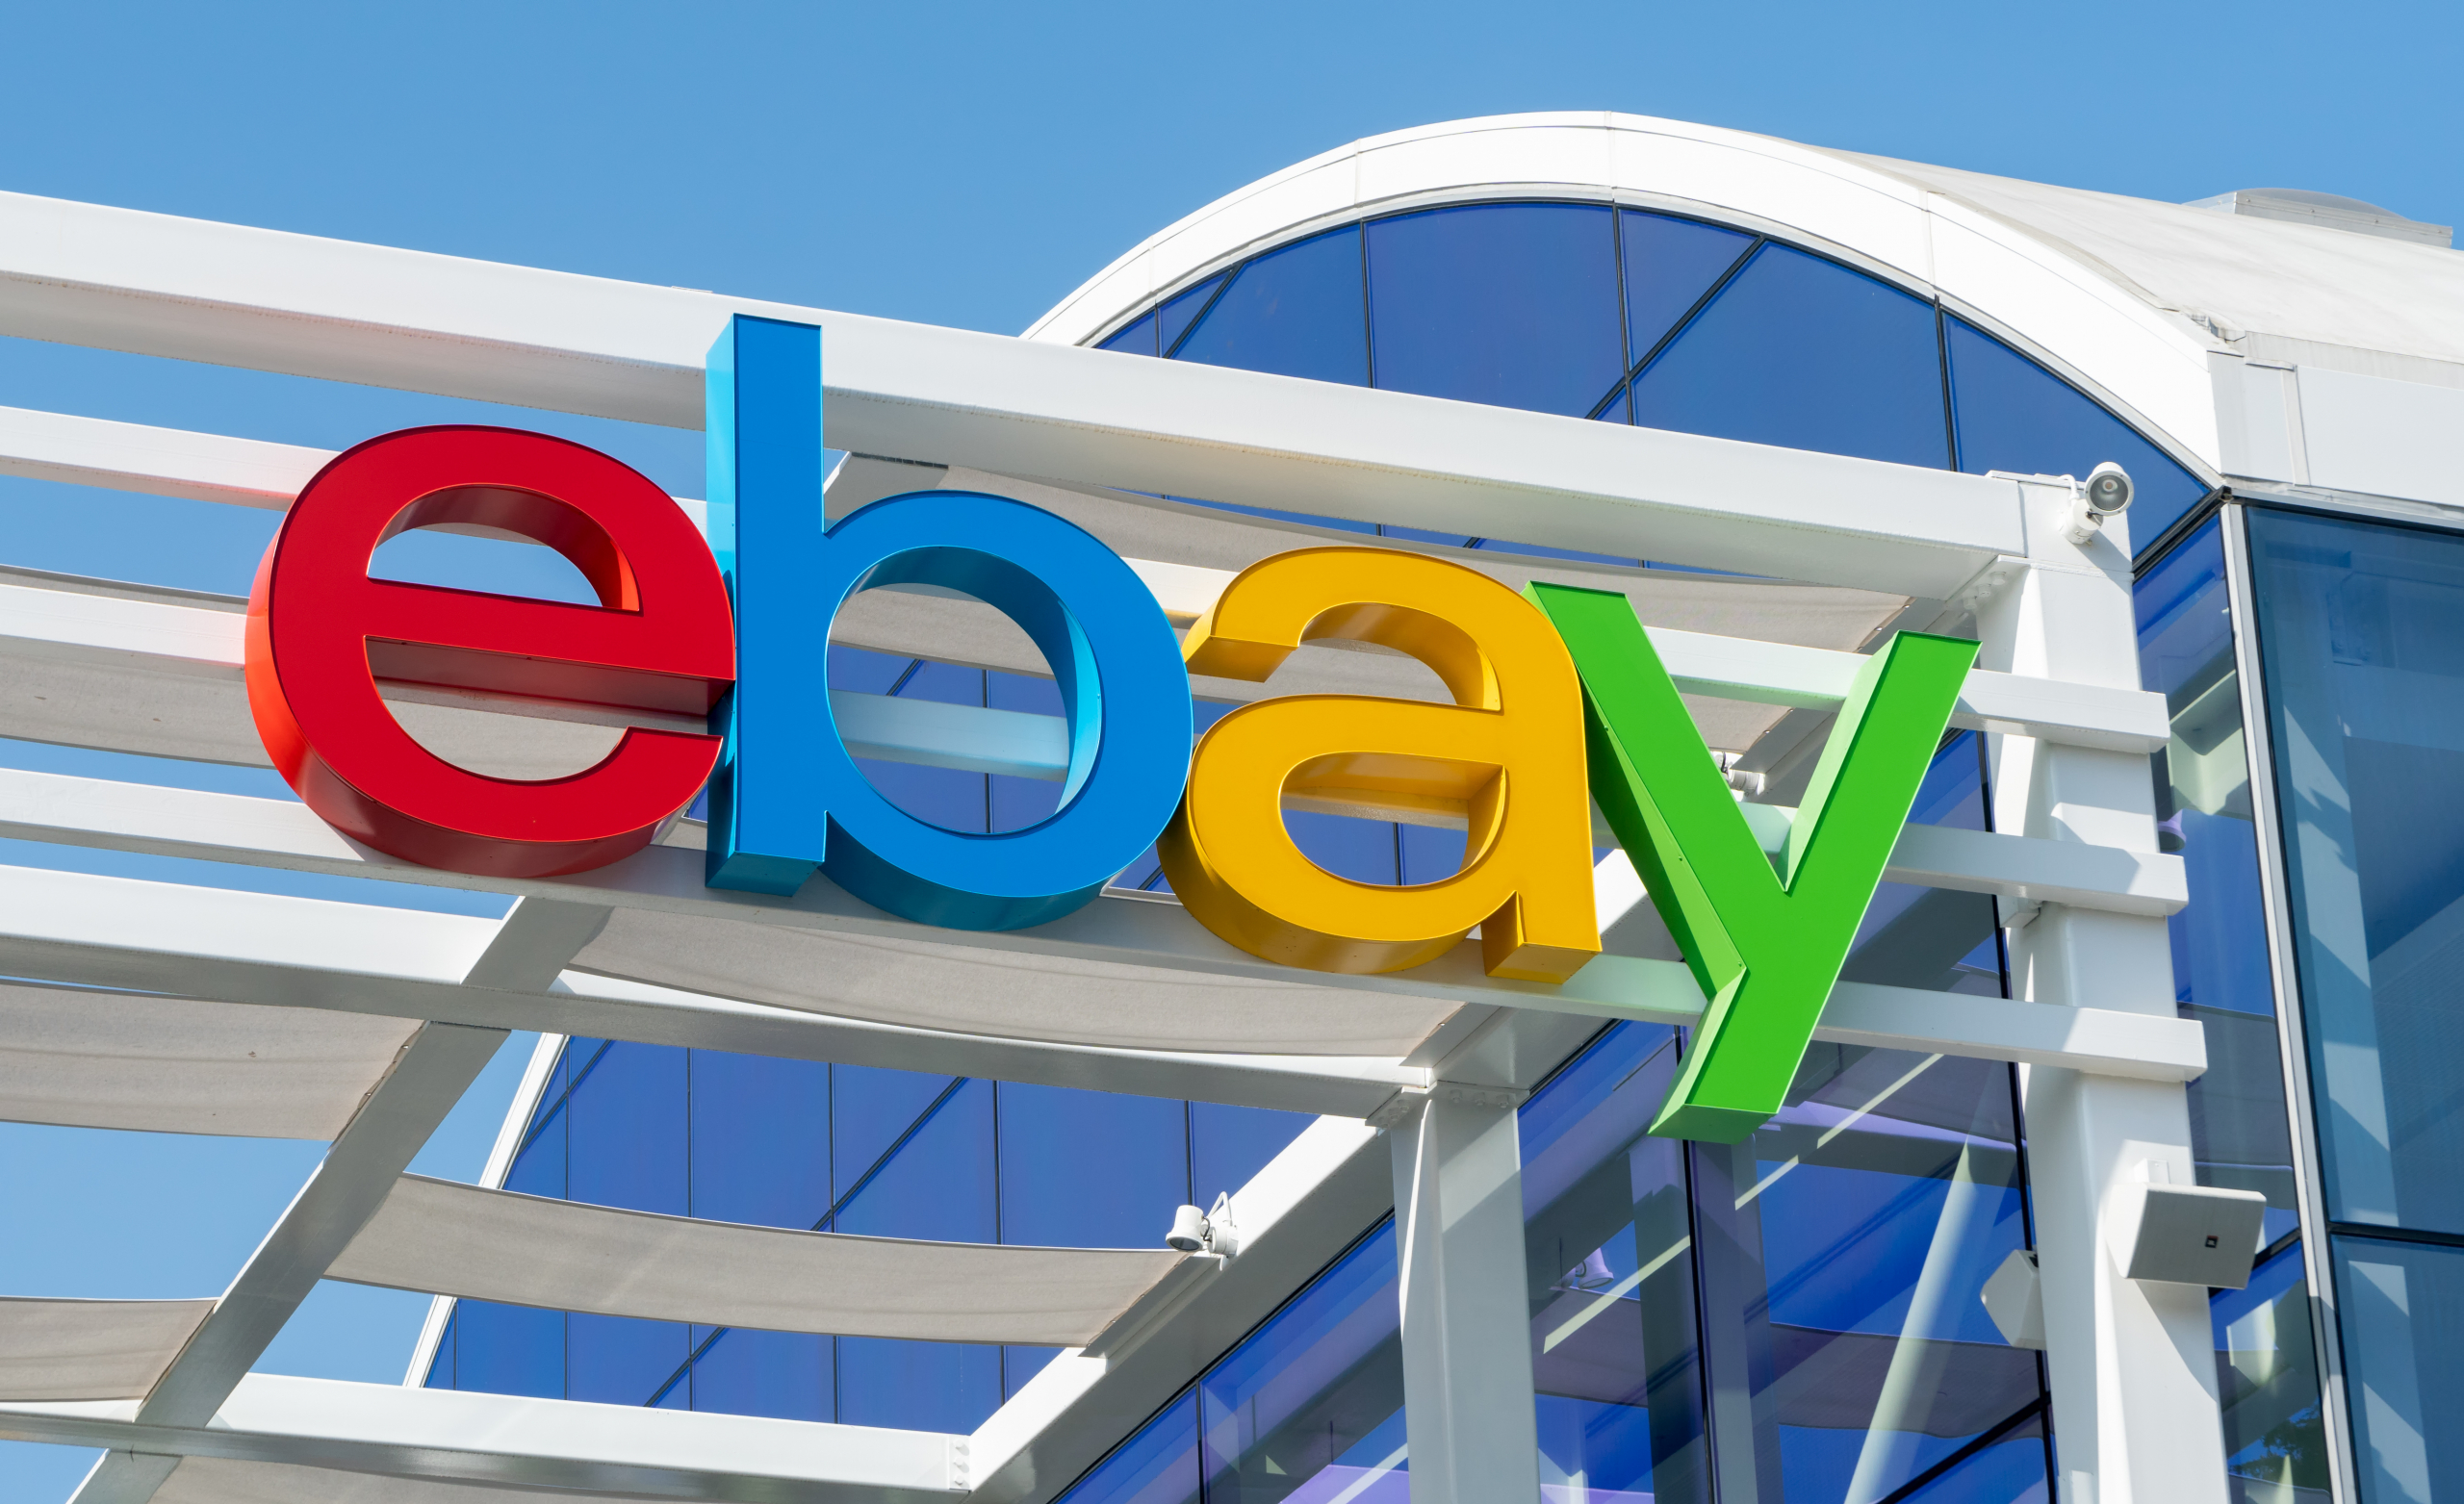 eBay buys up NFT marketplace KnownOrigin
